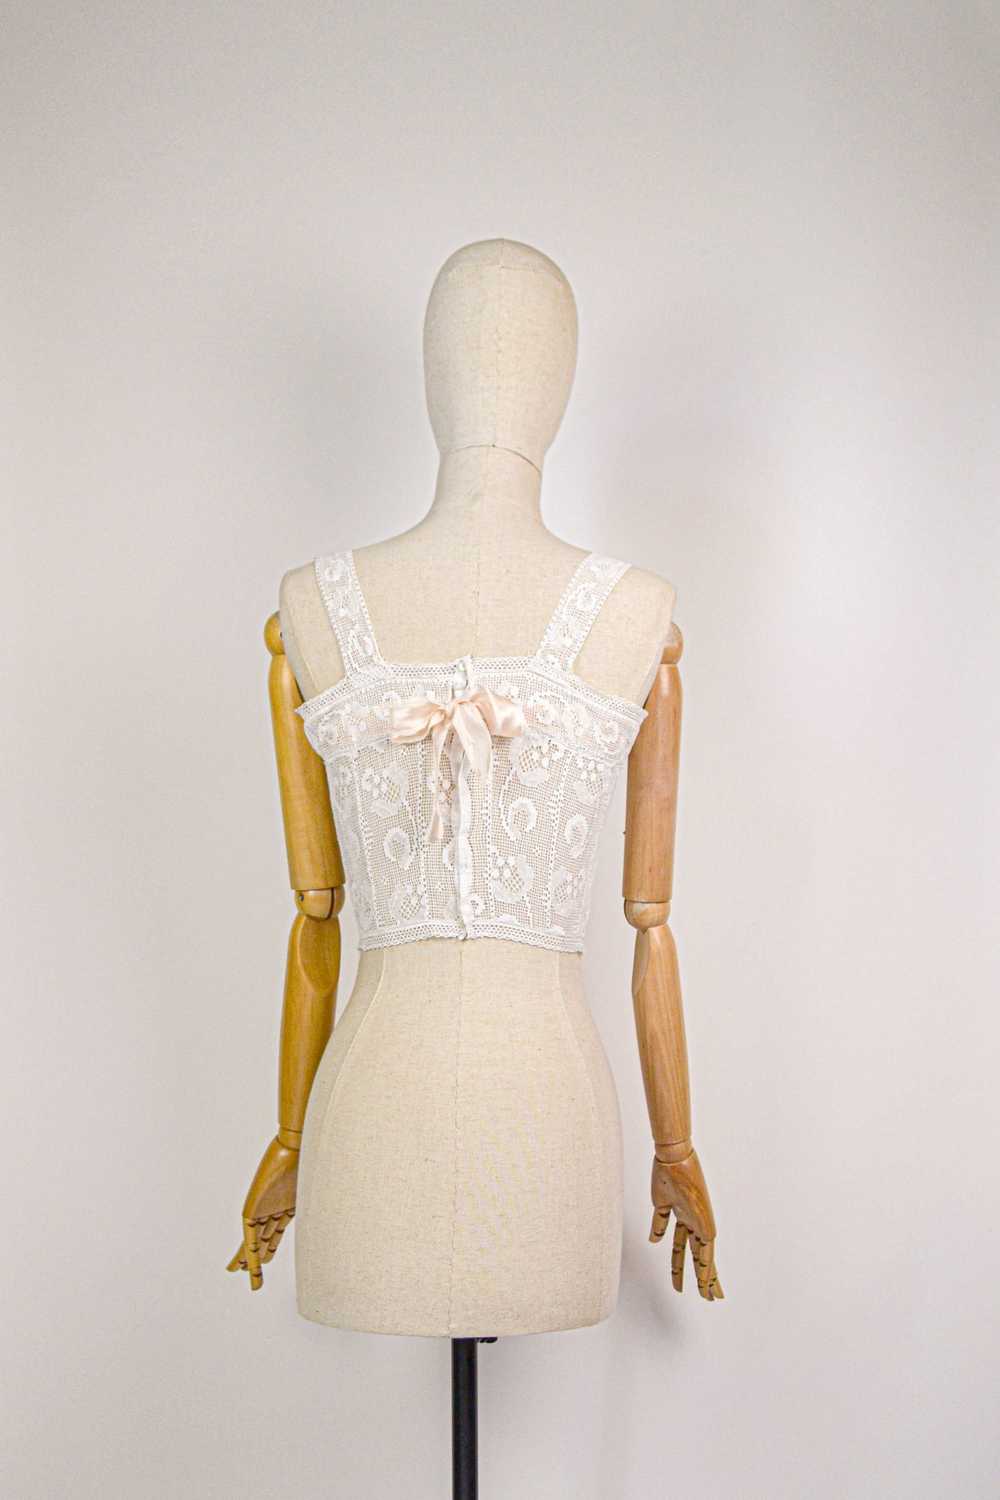 HONORINE - 1920s Vintage Cotton Lace Bralette - S… - image 4